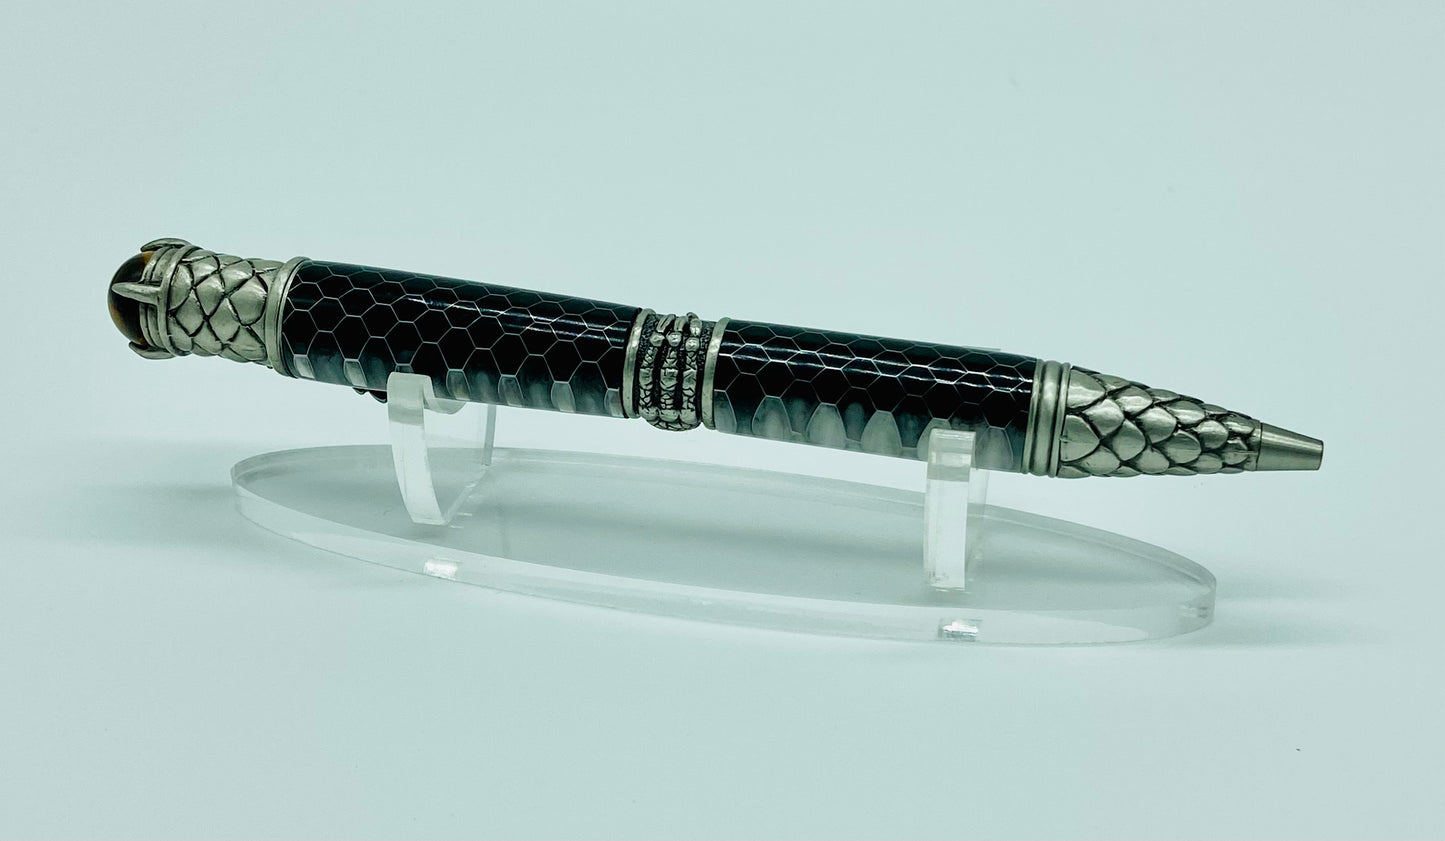 Dragon pen